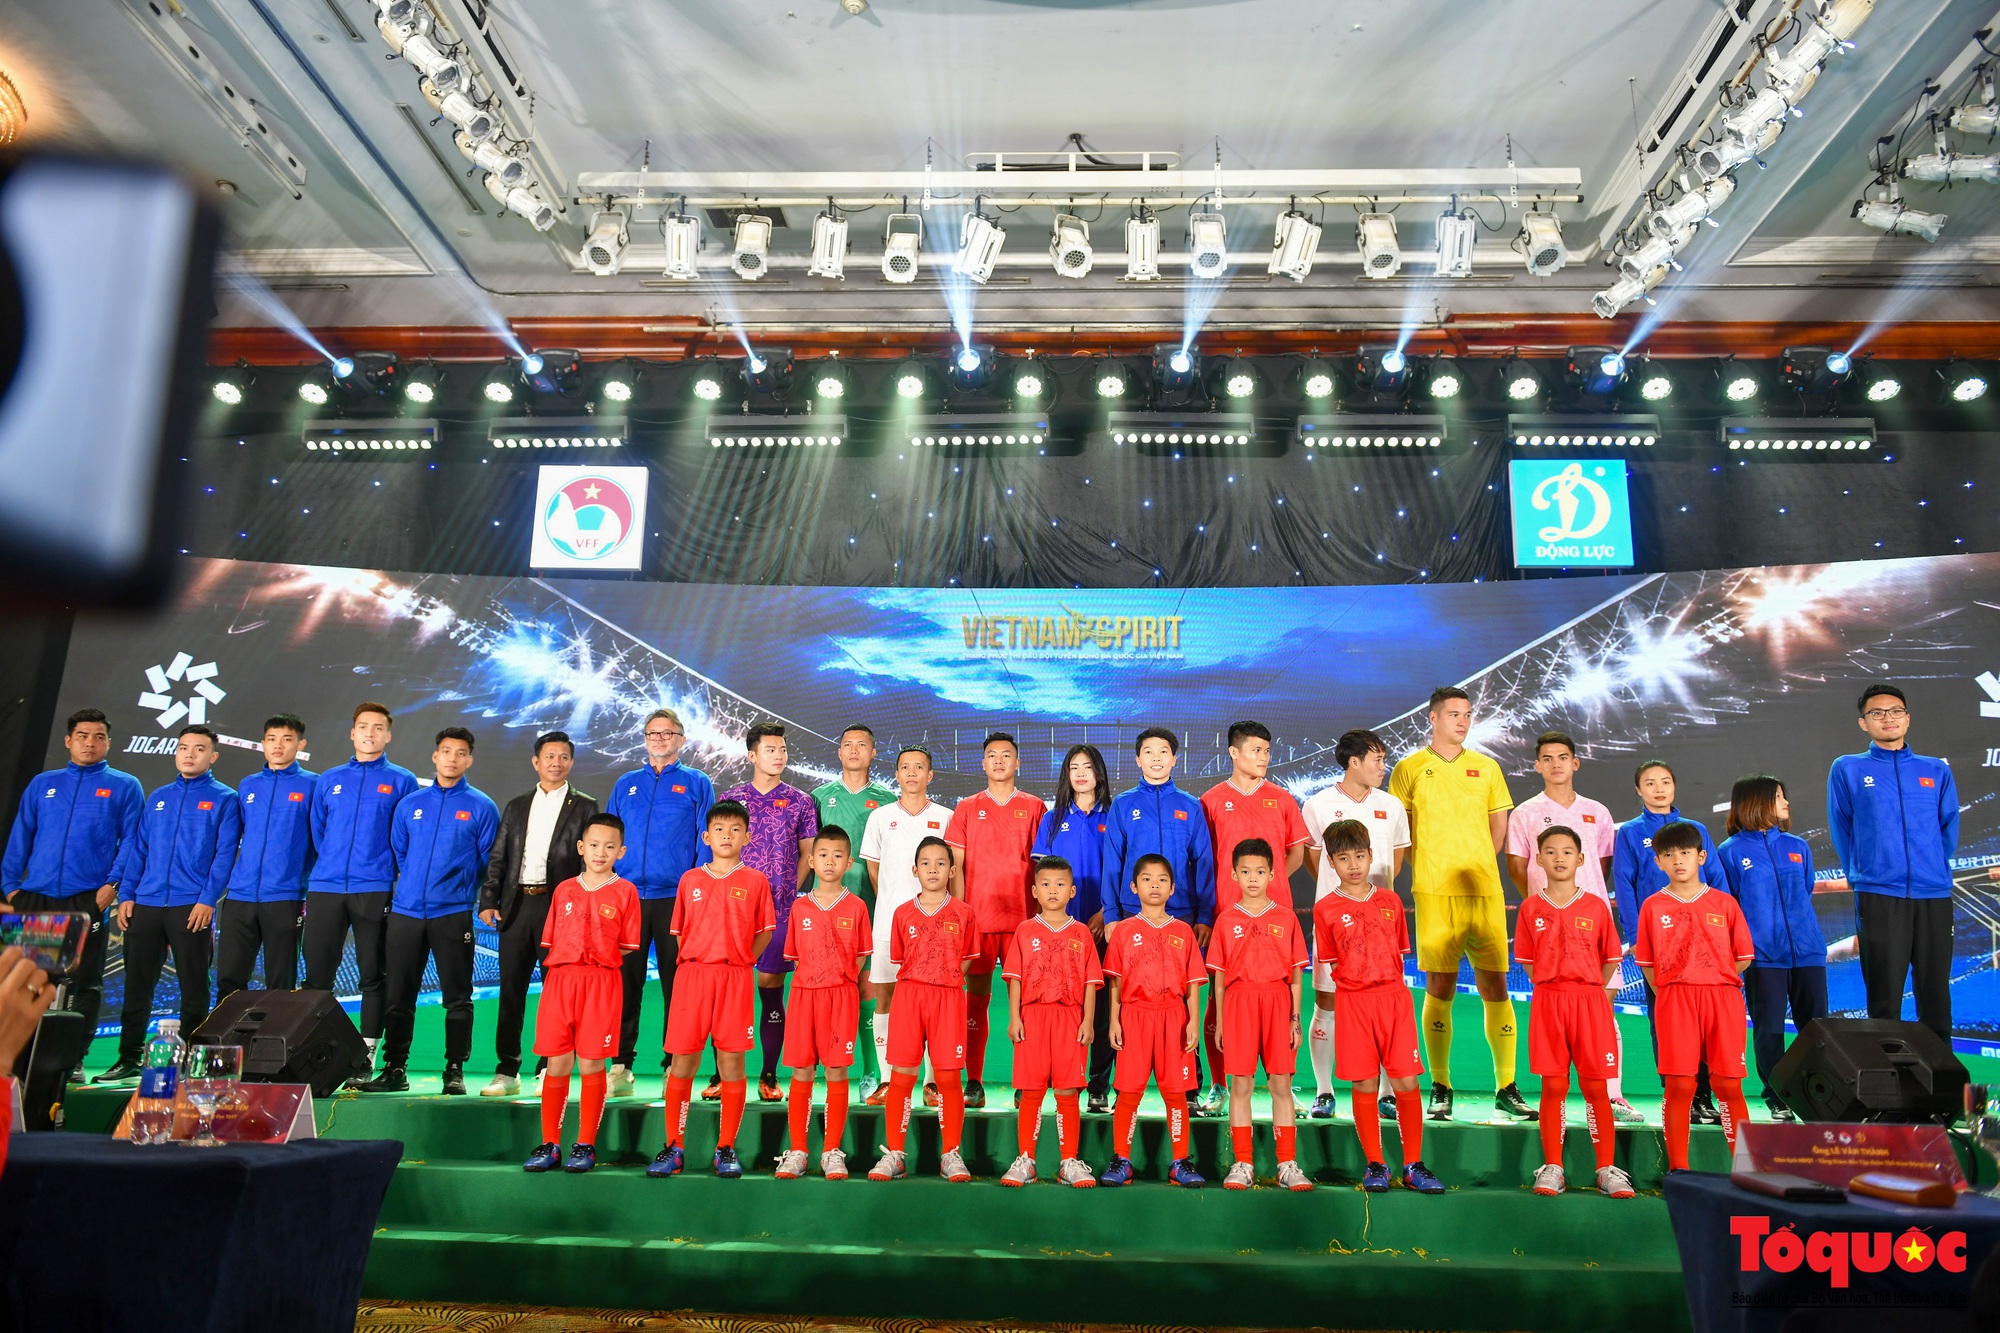 Ra mắt trang phục thi đấu mới của đội tuyển Việt Nam - Ảnh 2.